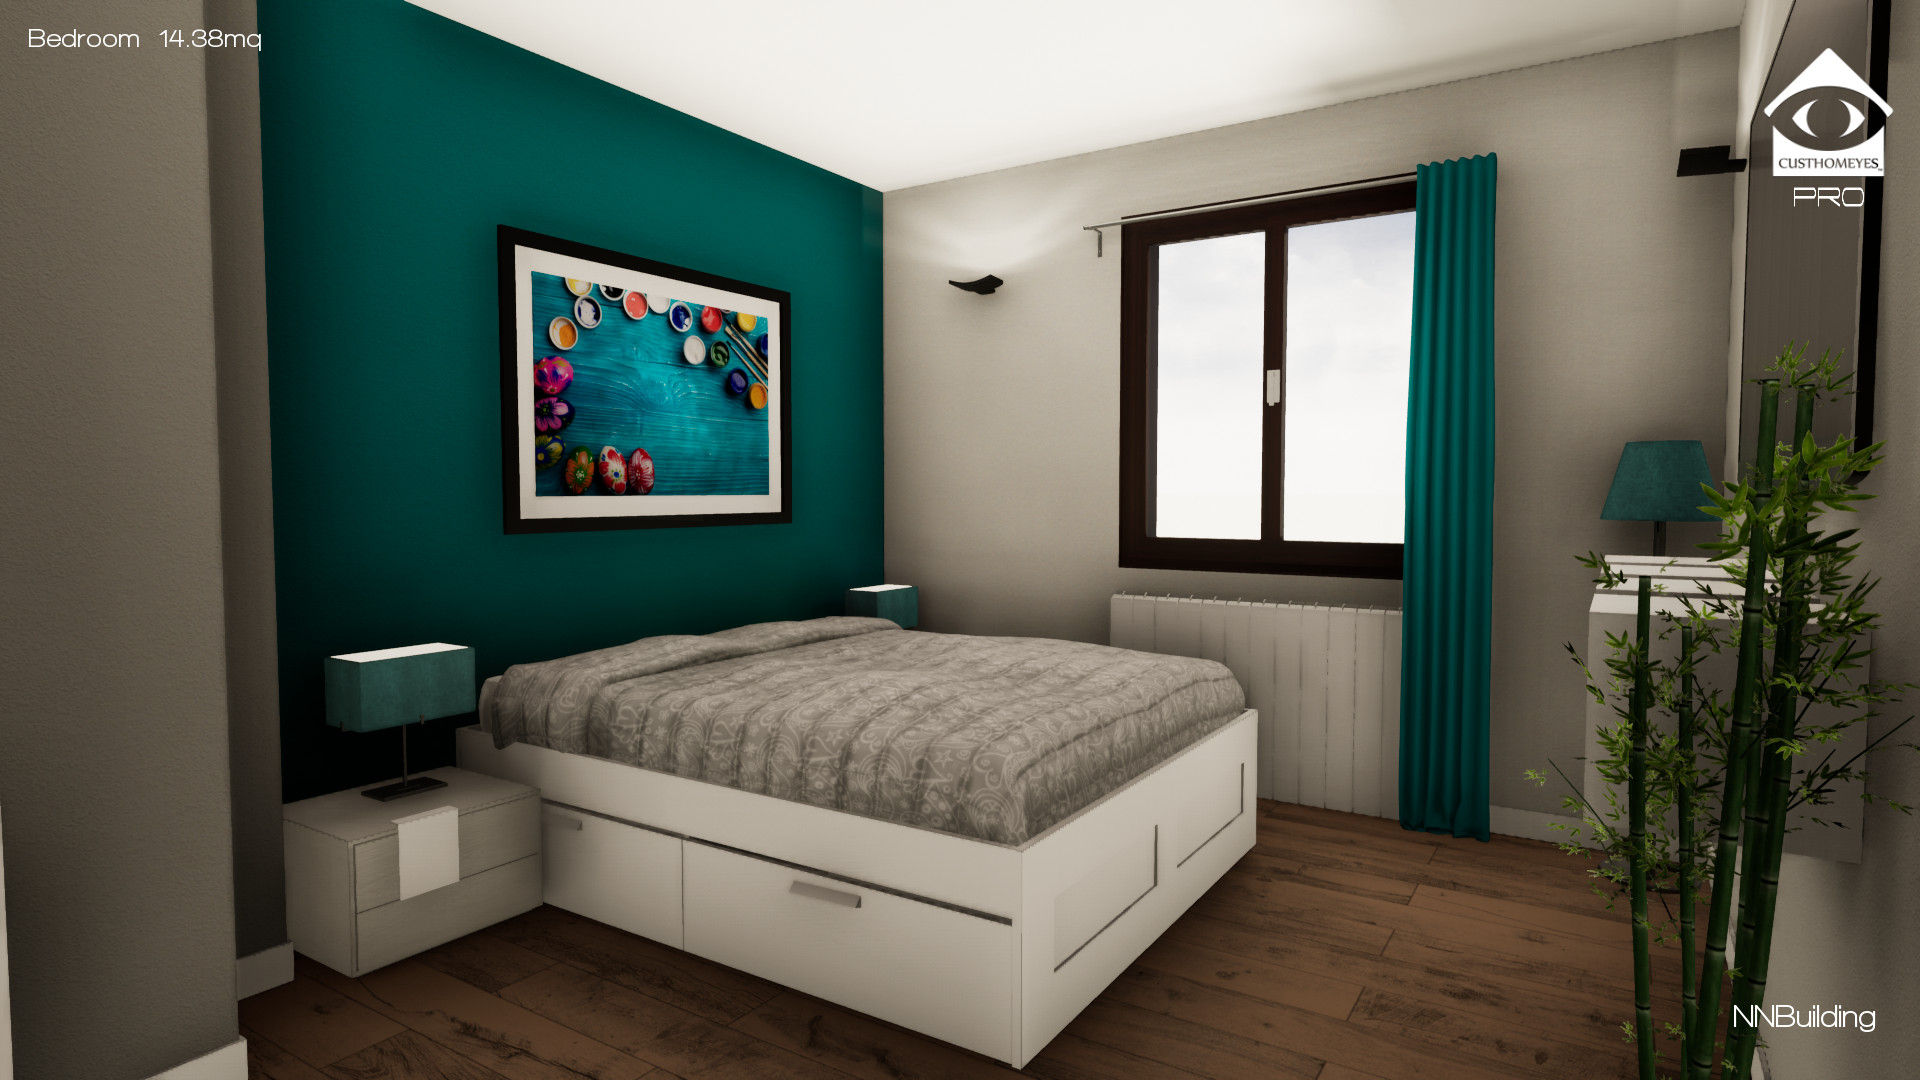 Progettazione in realtà virtuale e ristrutturazione completa - Appartamento Torino, NNBuilding NNBuilding Dormitorios clásicos